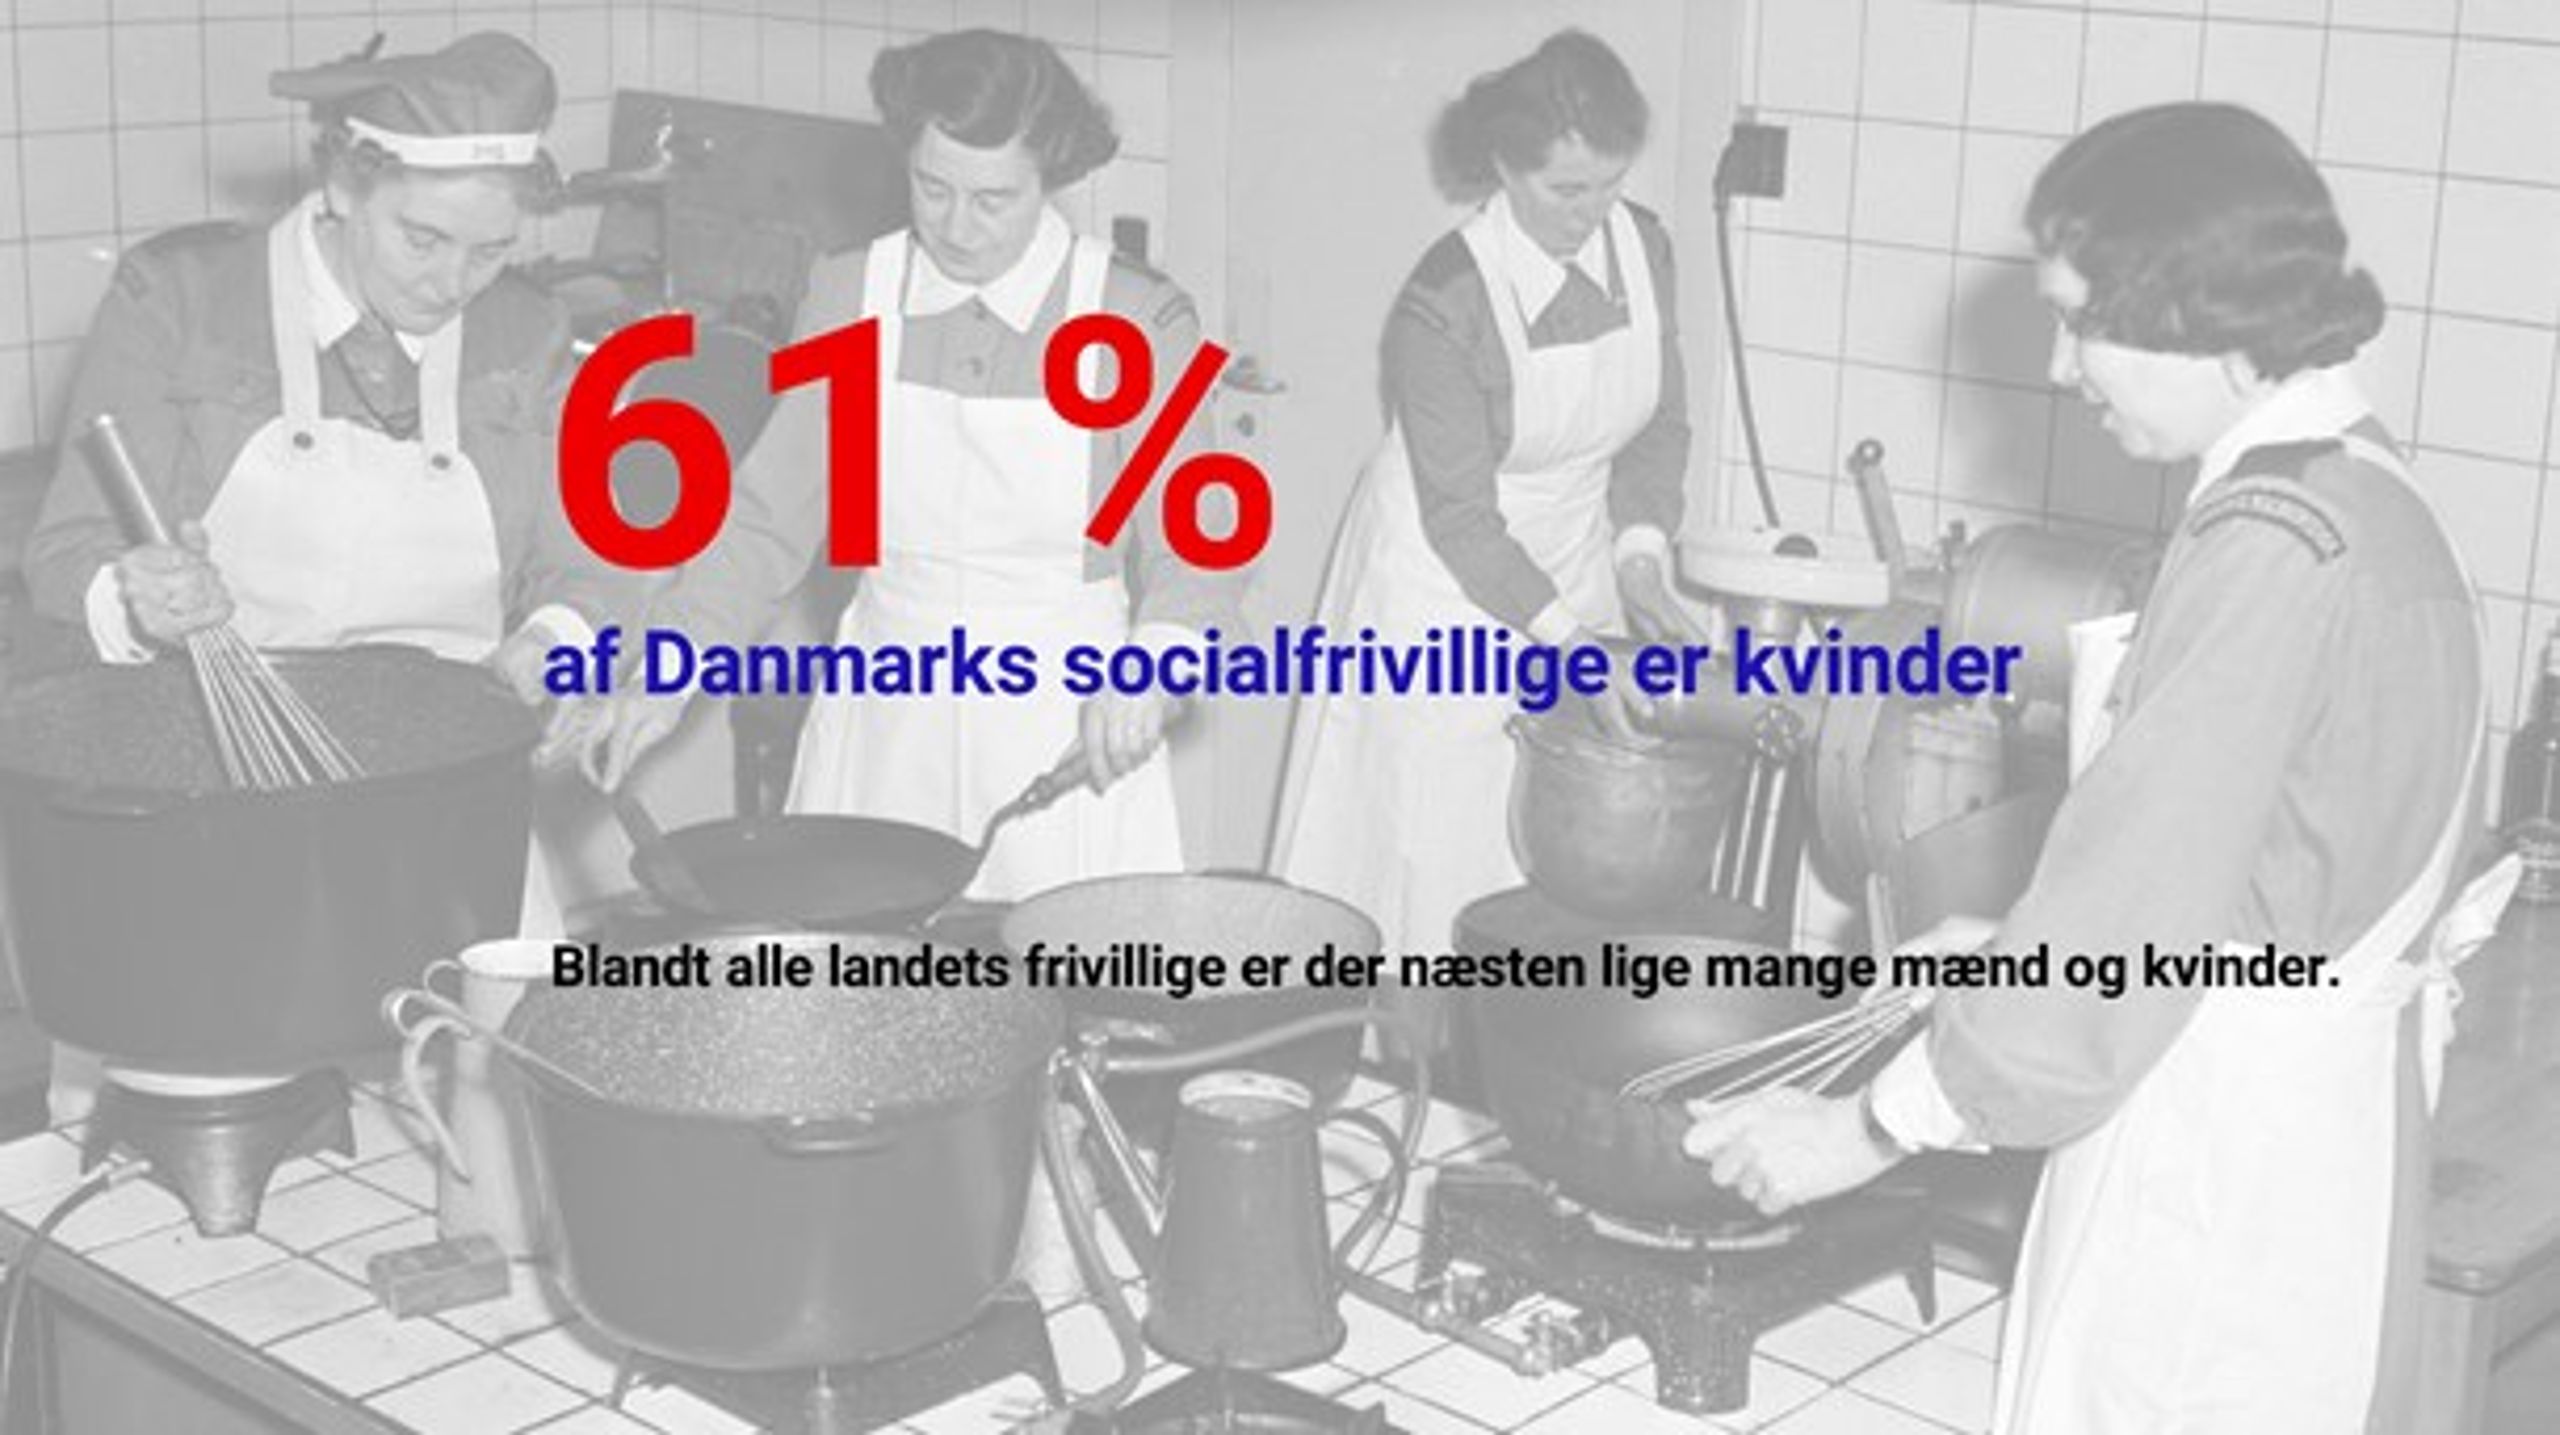 Center for Frivilligt Socialt Arbejde: "Tal om det frivillige sociale Danmark". Statistikken er baseret på udsagn fra 1.312 socialfrivillige.&nbsp;&nbsp;